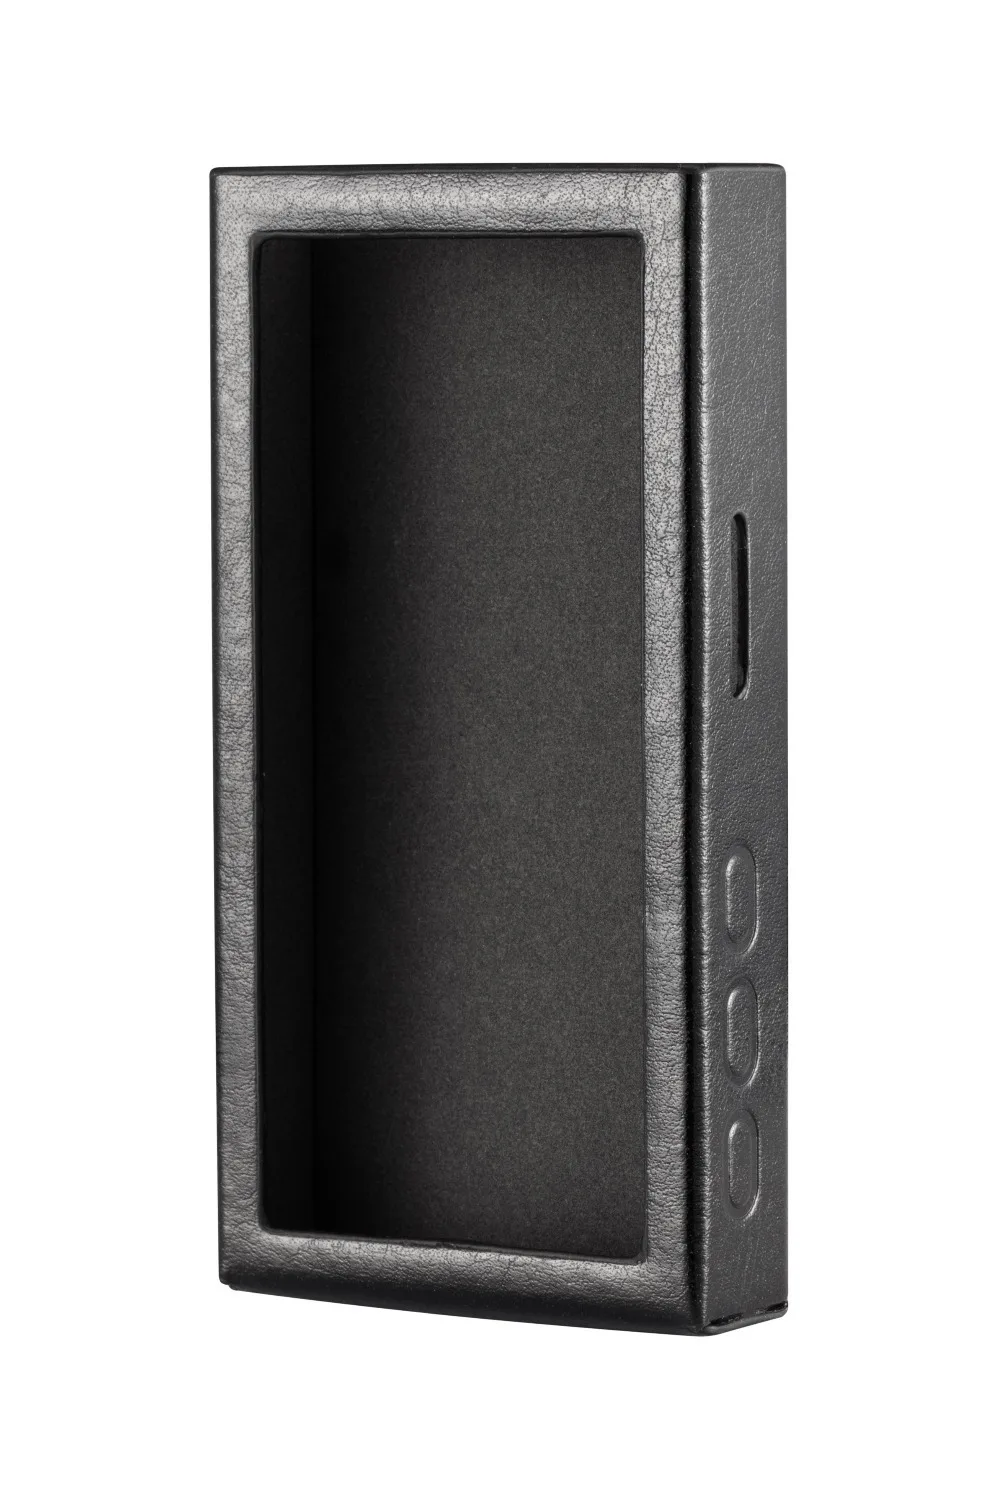 XDuoo X3II MP3-плеер из искусственной кожи чехол и наклейка хорошего качества кожаный чехол и наклейка для XDuoo X3II